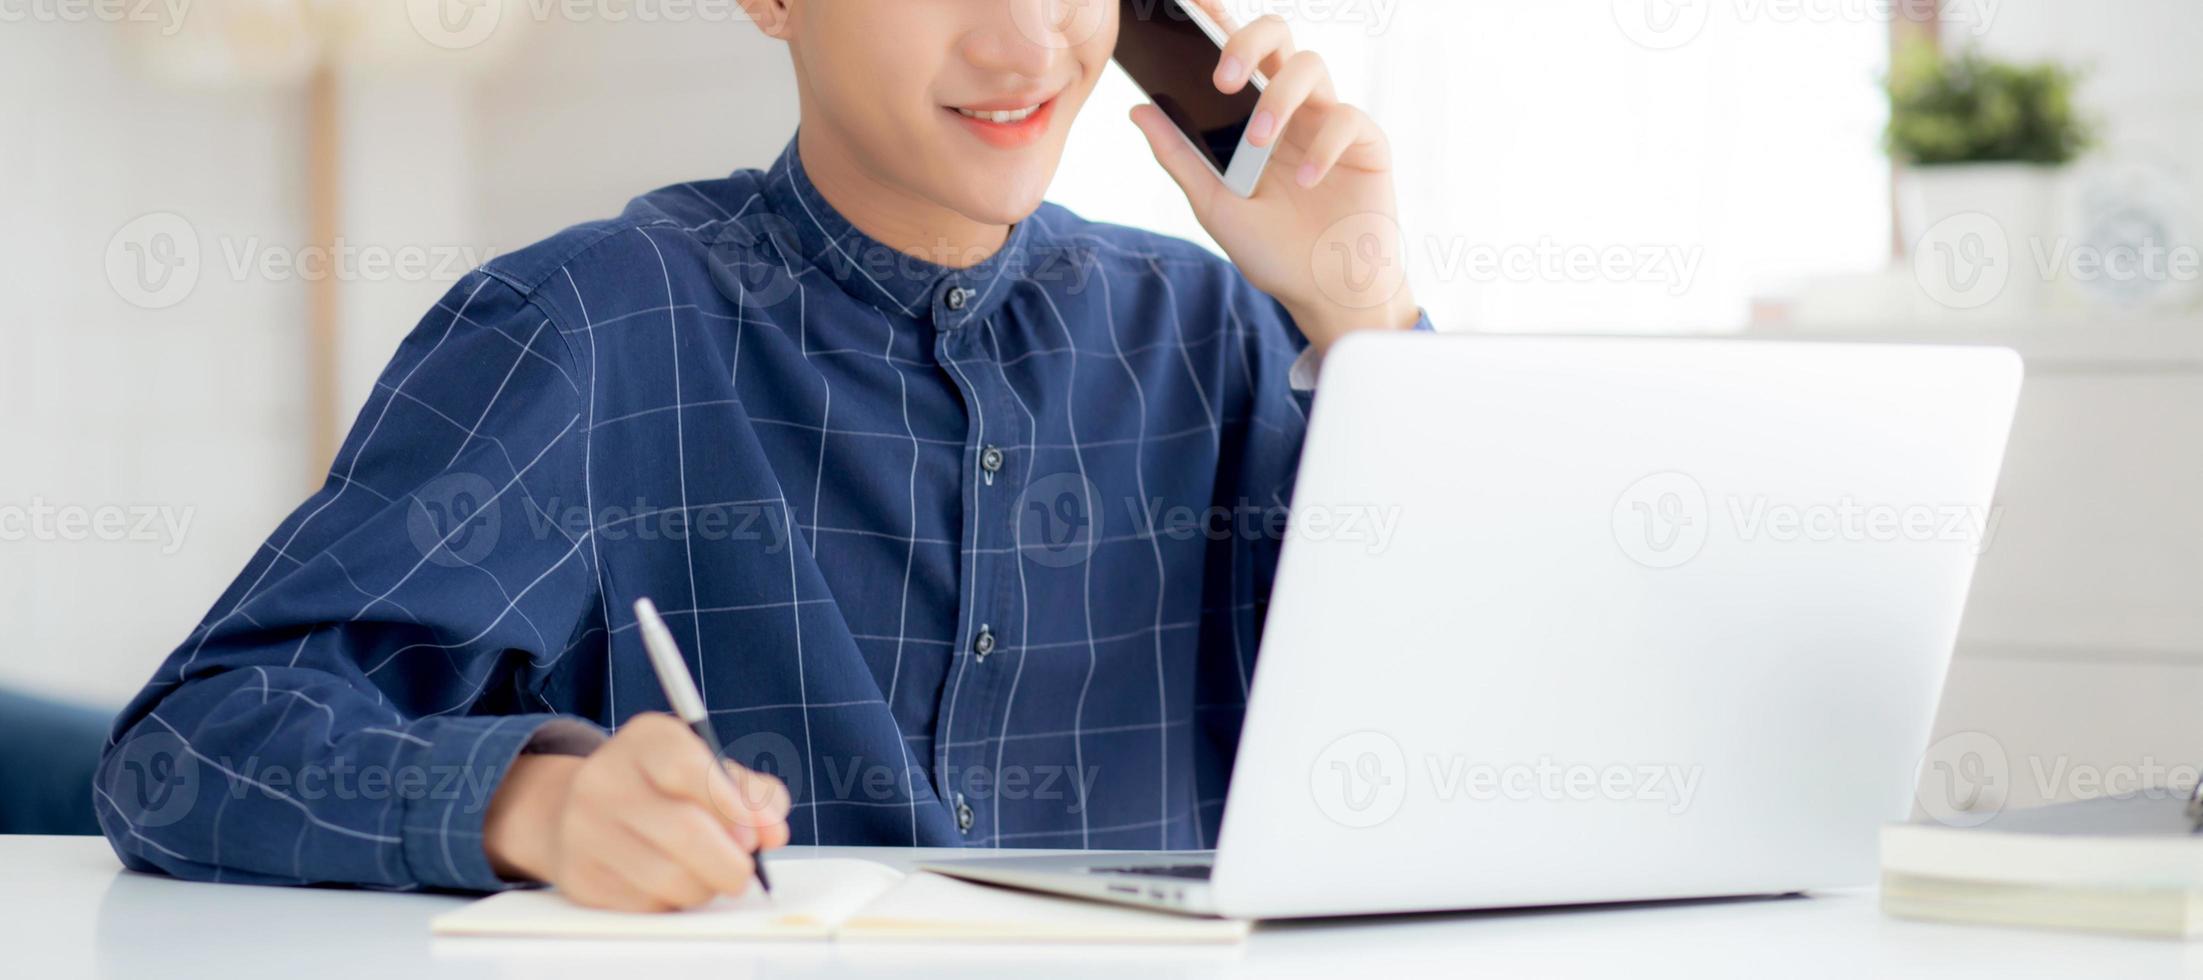 jonge aziatische man praten over telefoon en werken vanuit huis met laptopcomputer, freelance man schrijven op notebook en spreken op smartphone, thuis blijven, huiselijk leven, zaken- en communicatieconcept. foto